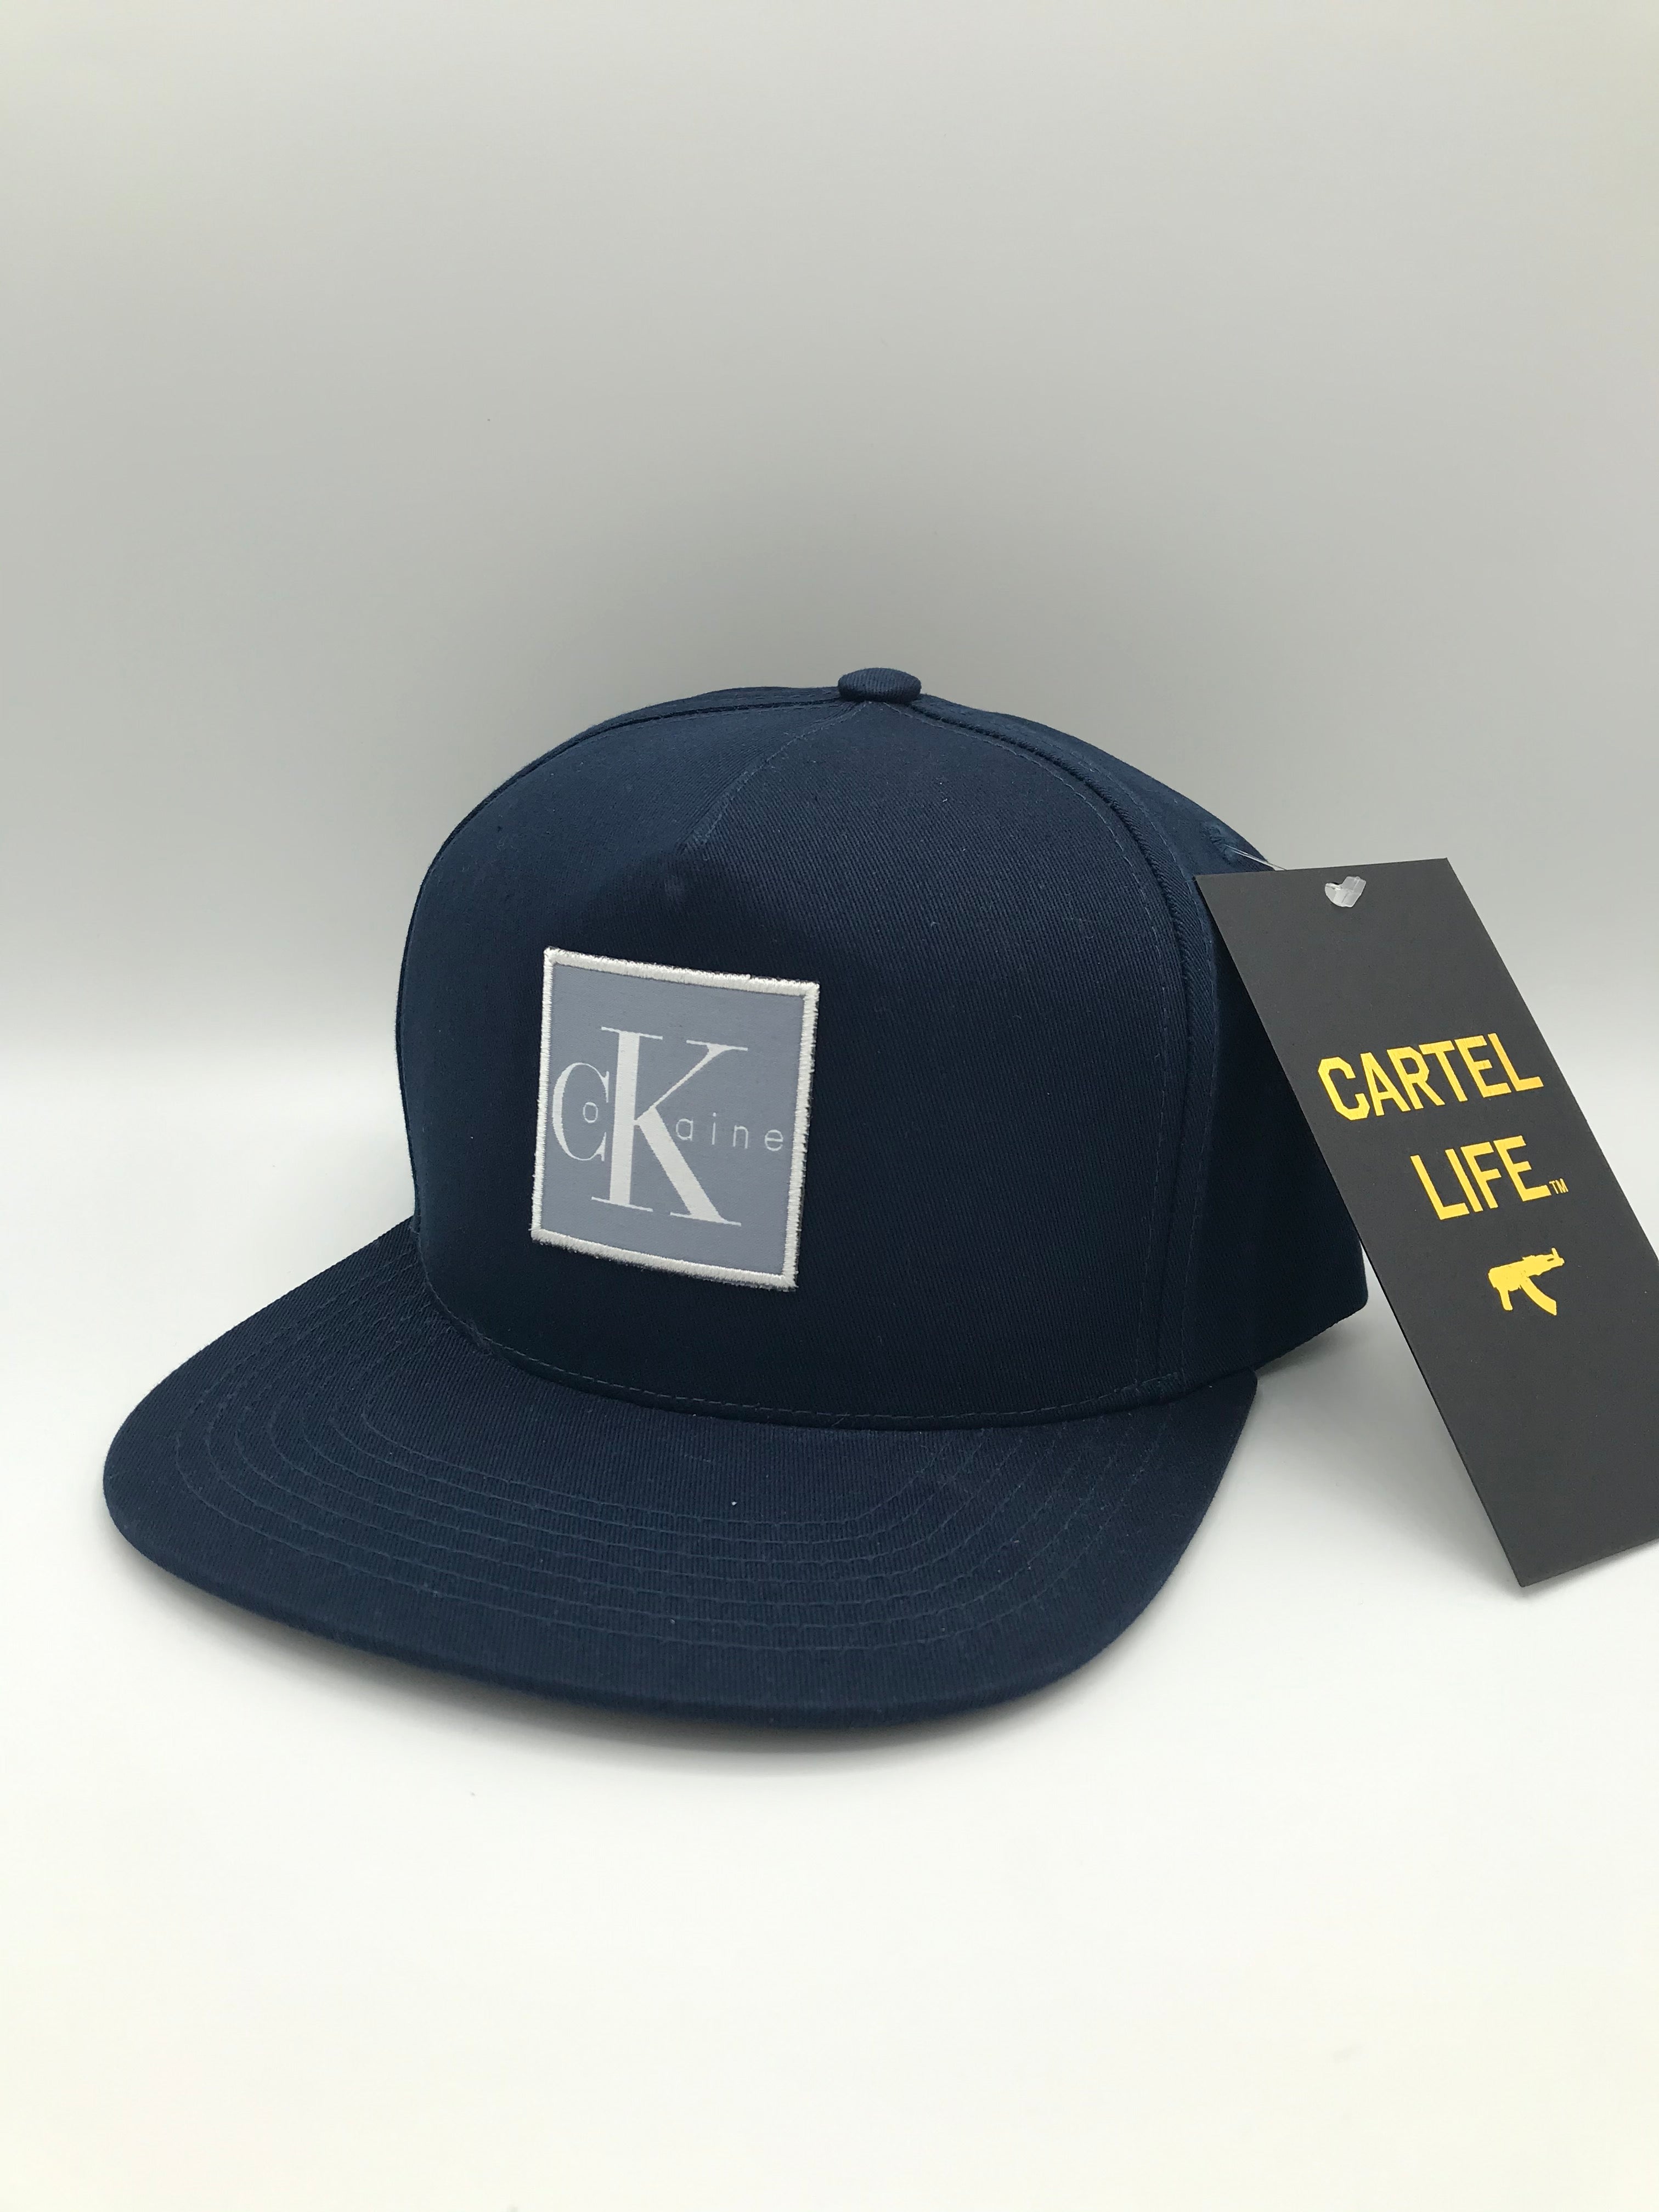 C. Koke Hat